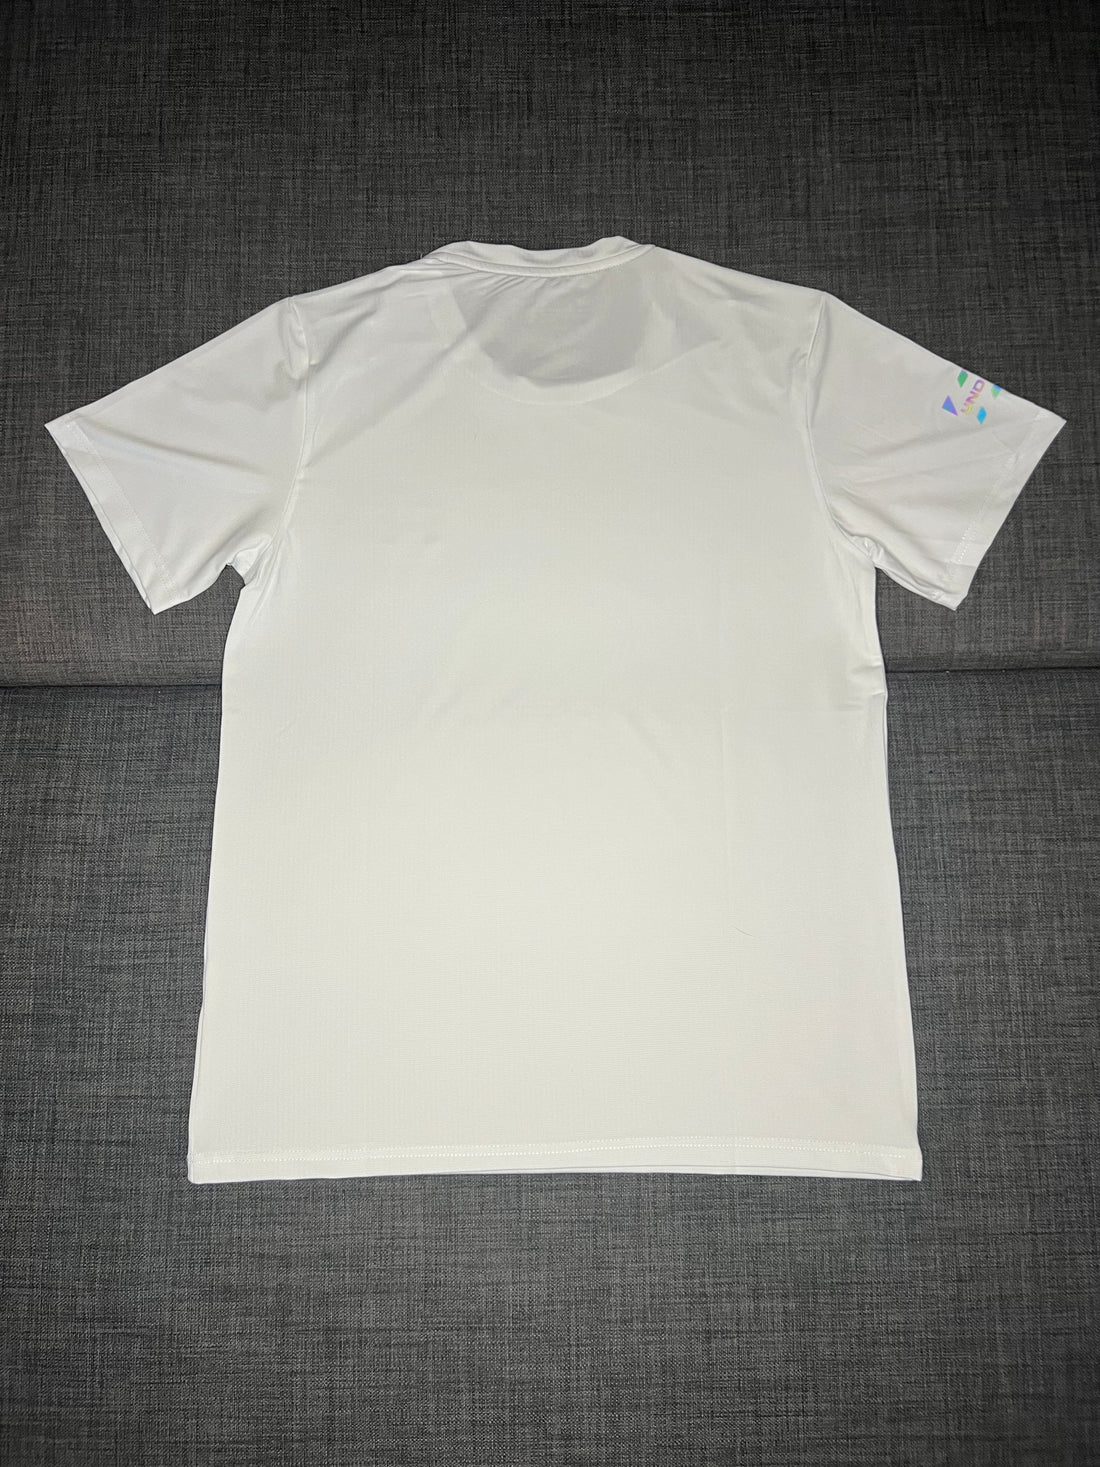 T-shirt Blanc Fluorescent